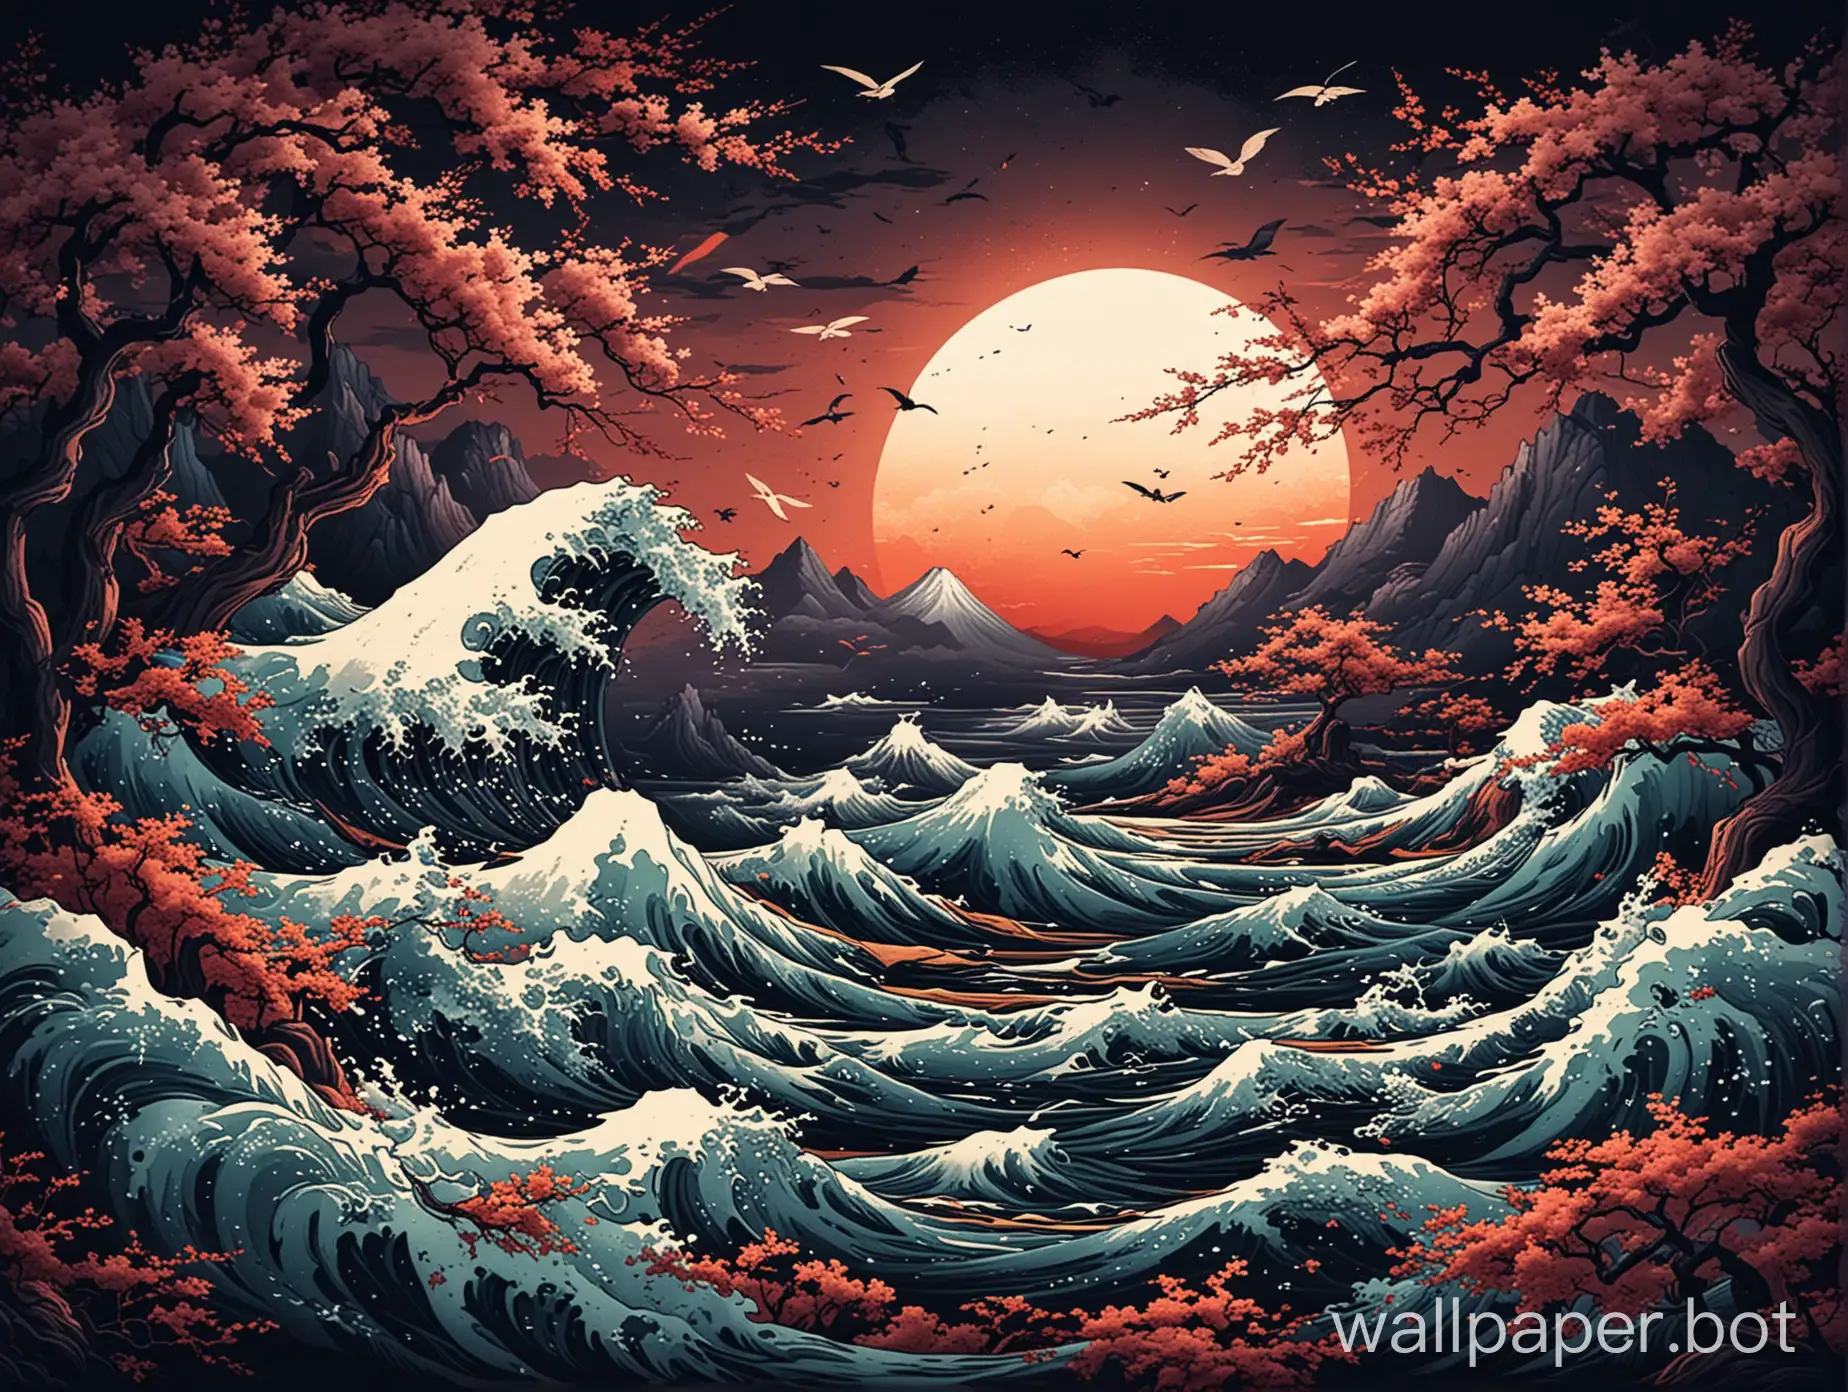 Dark-Nature-Wallpaper-Inspired-by-Kanagawa-Colors